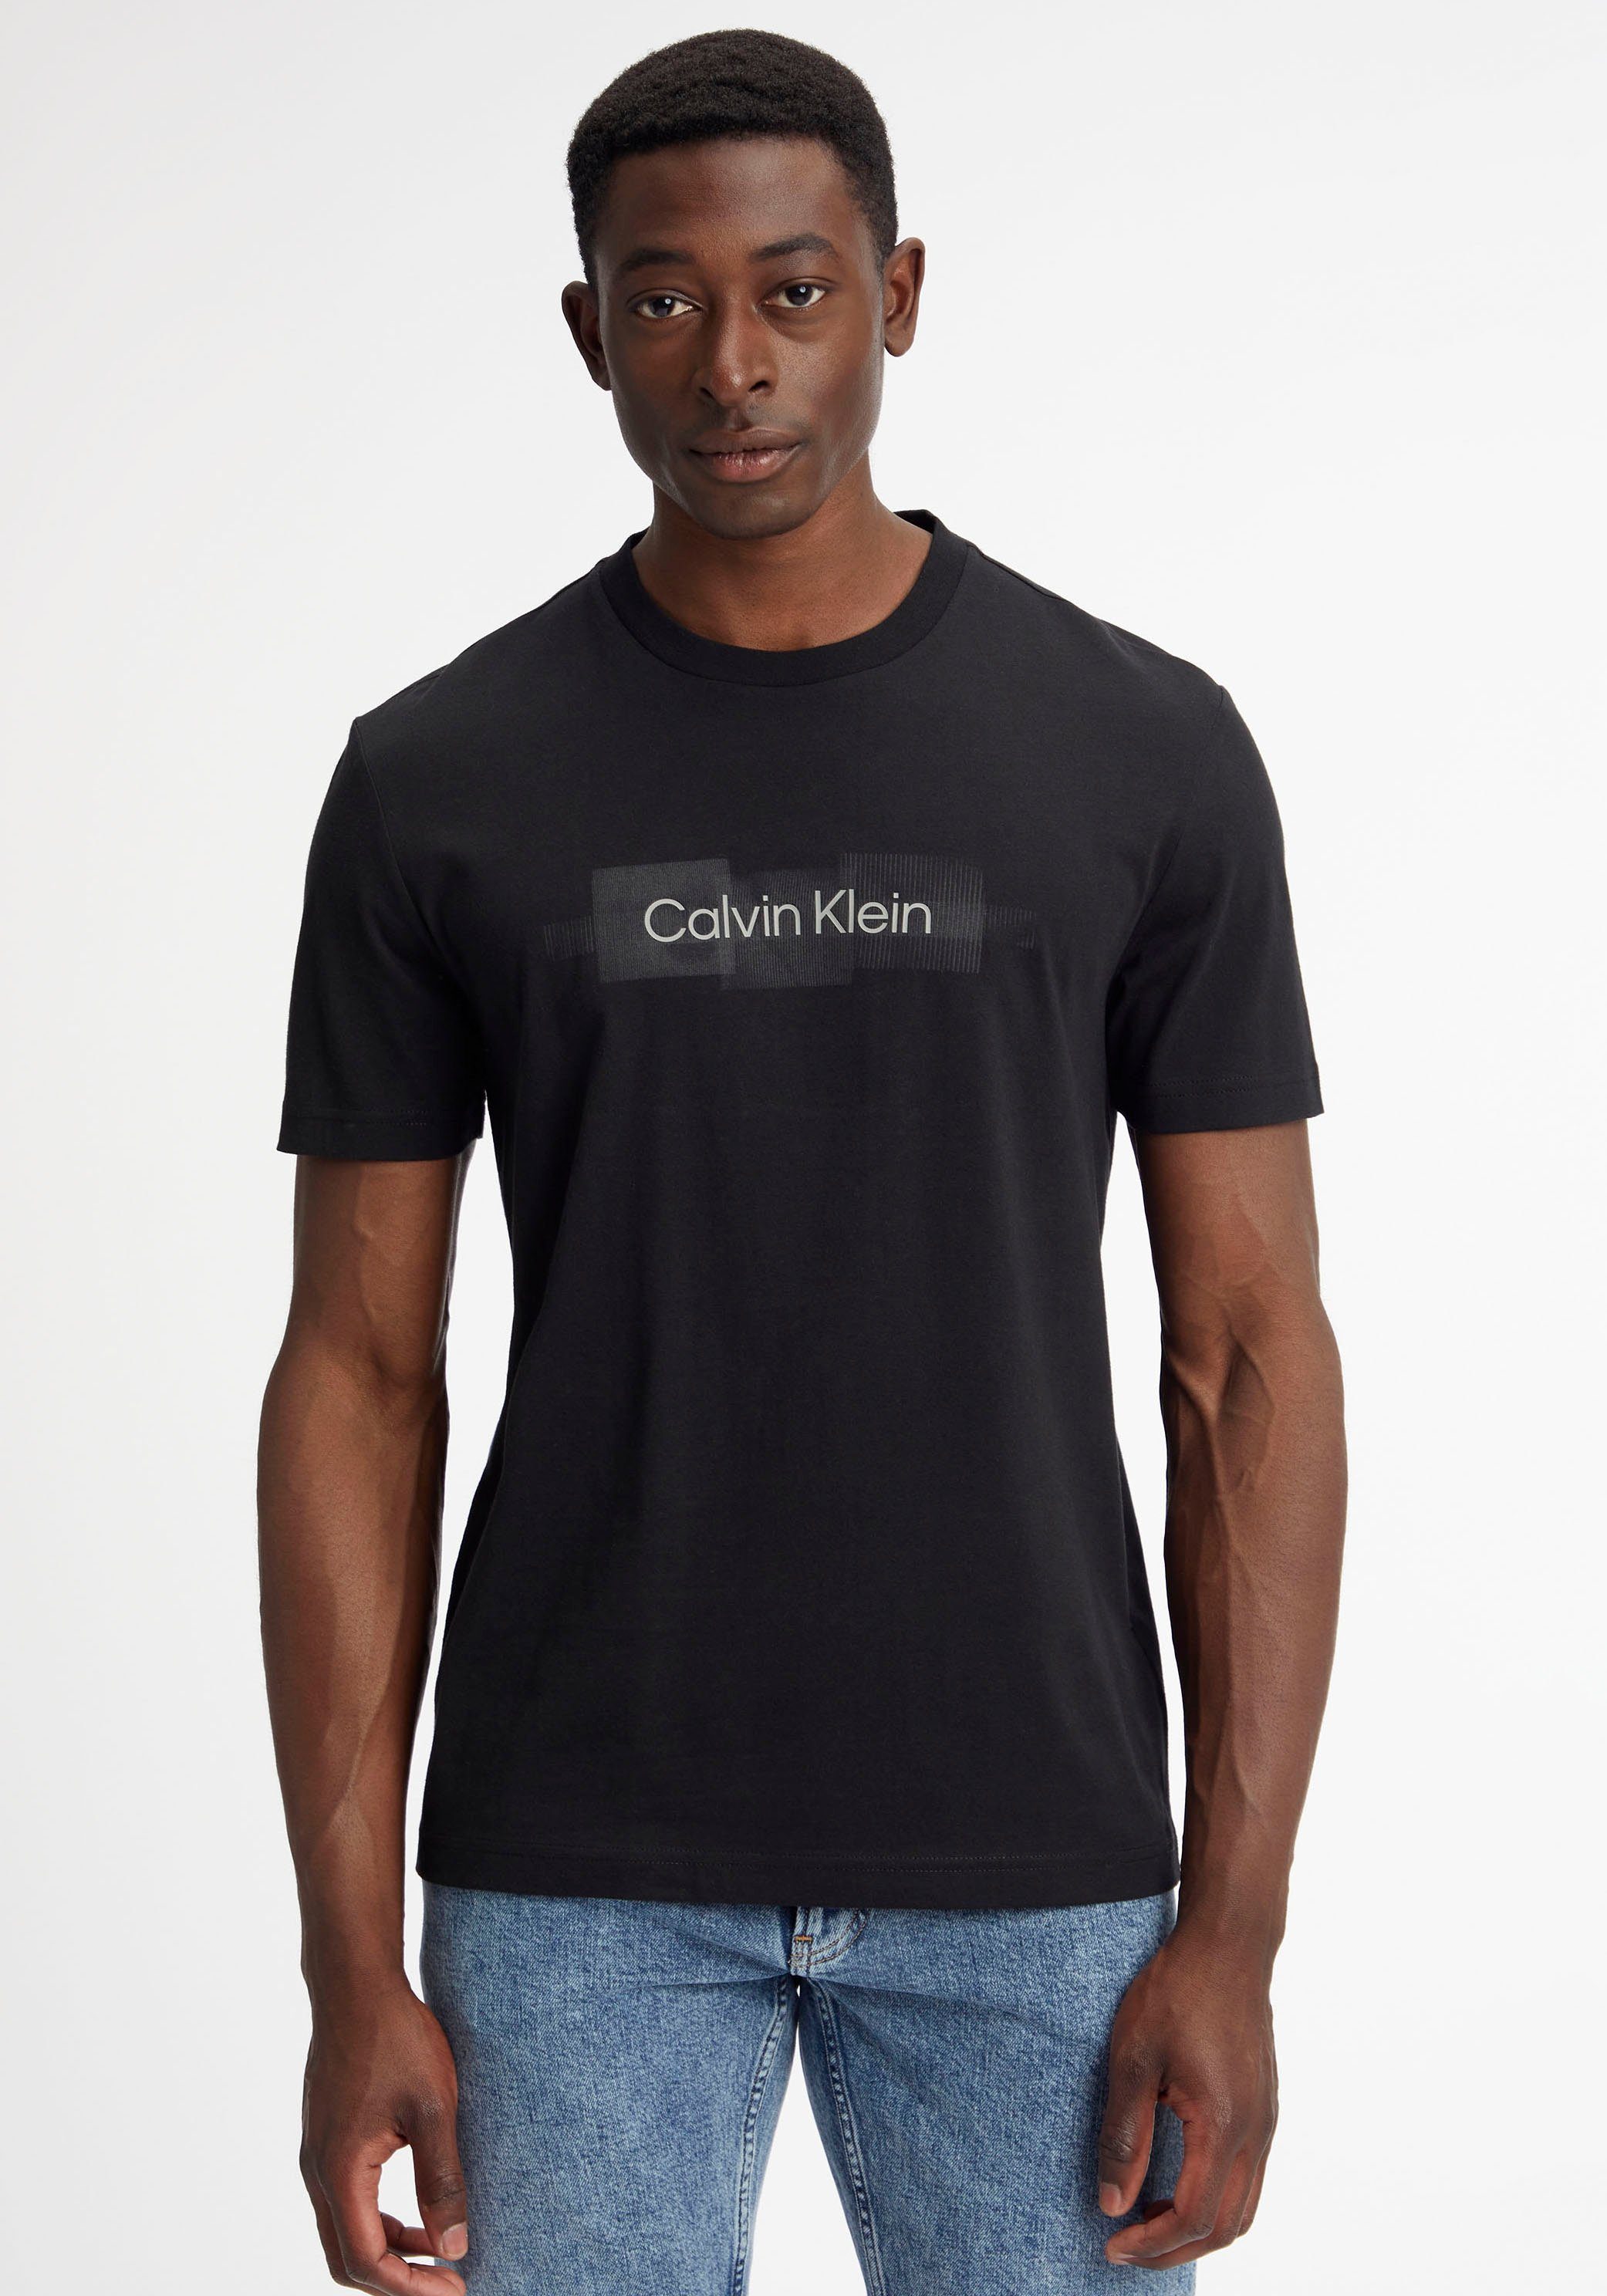 aus Klein Black LOGO STRIPED Calvin reiner BOX T-Shirt Baumwolle Ck T-SHIRT